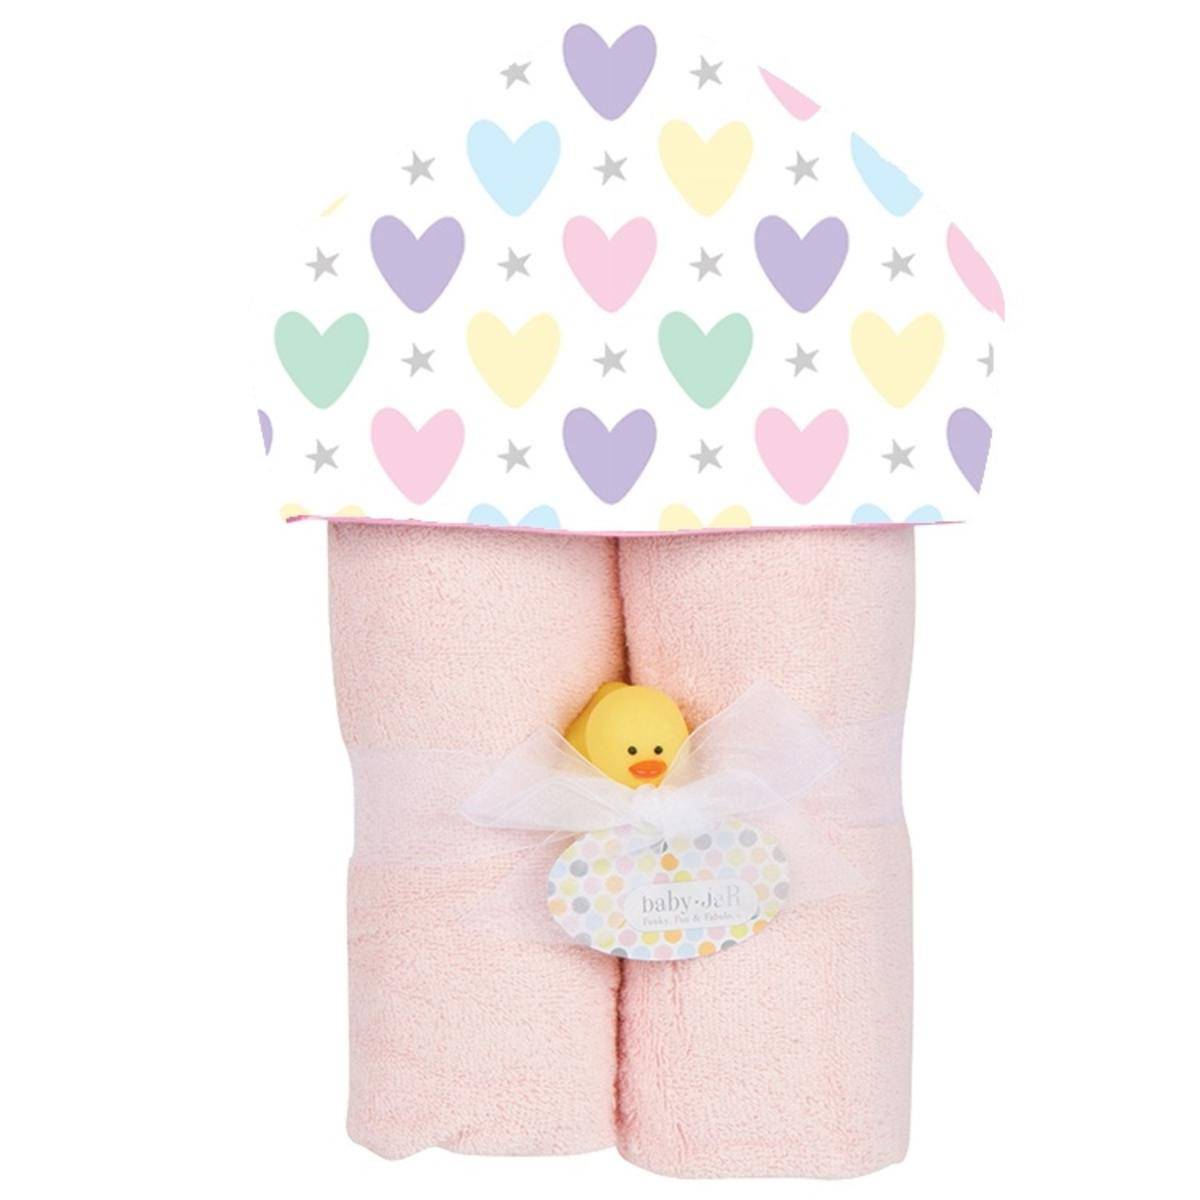 Hearts & Stars Deluxe Hooded Towel - Twinkle Twinkle Little One